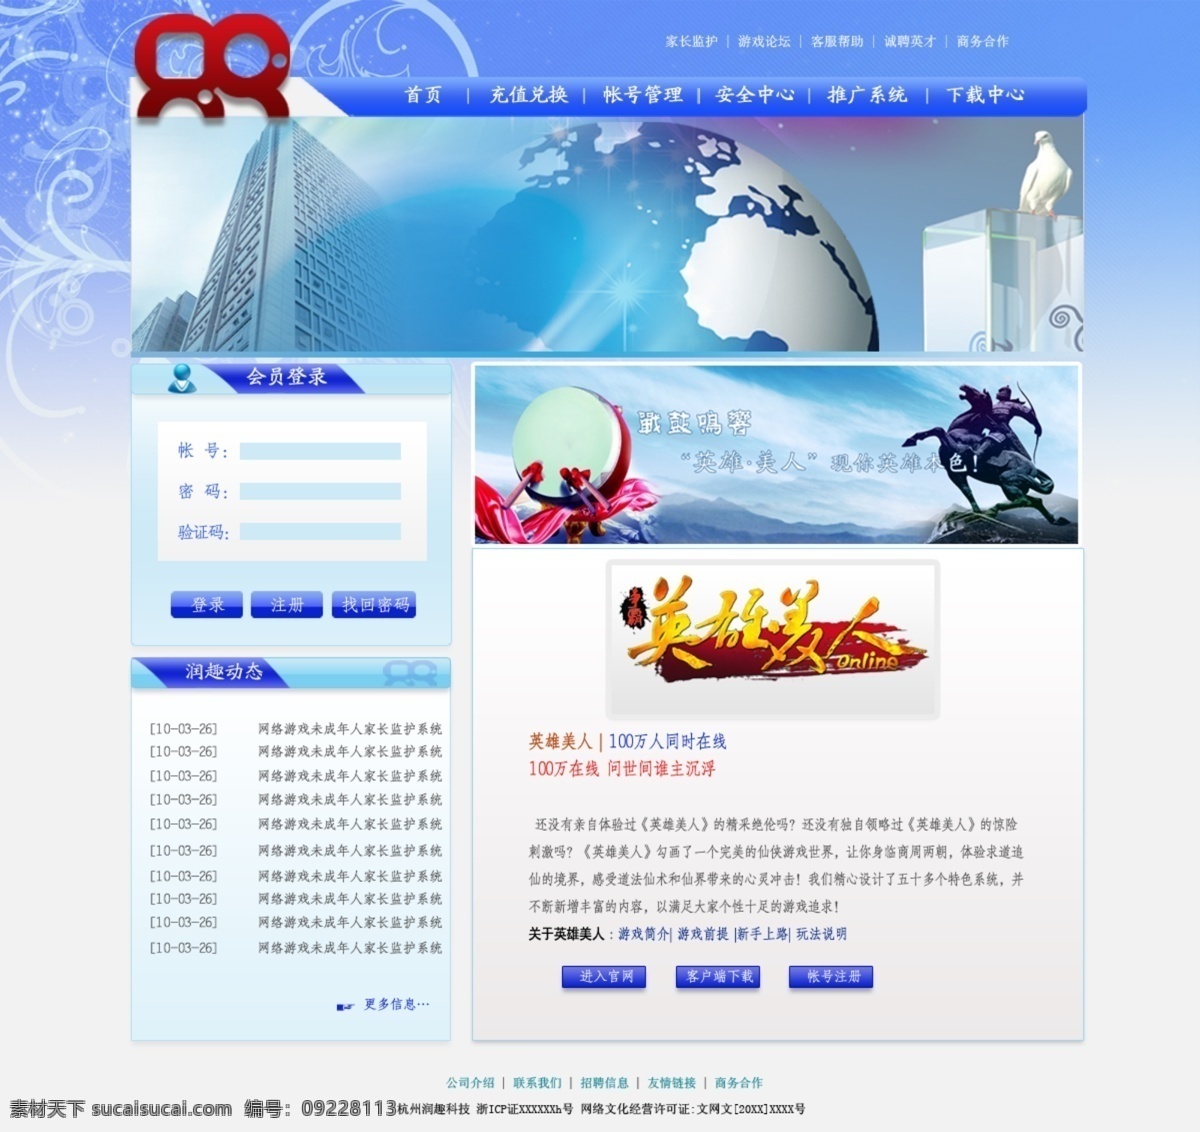 网页模板 模板下载 源文件 中文模版 蓝色基调 蓝灰共同组合 包括公司介绍 动态 项 内容 清新明了 网页素材